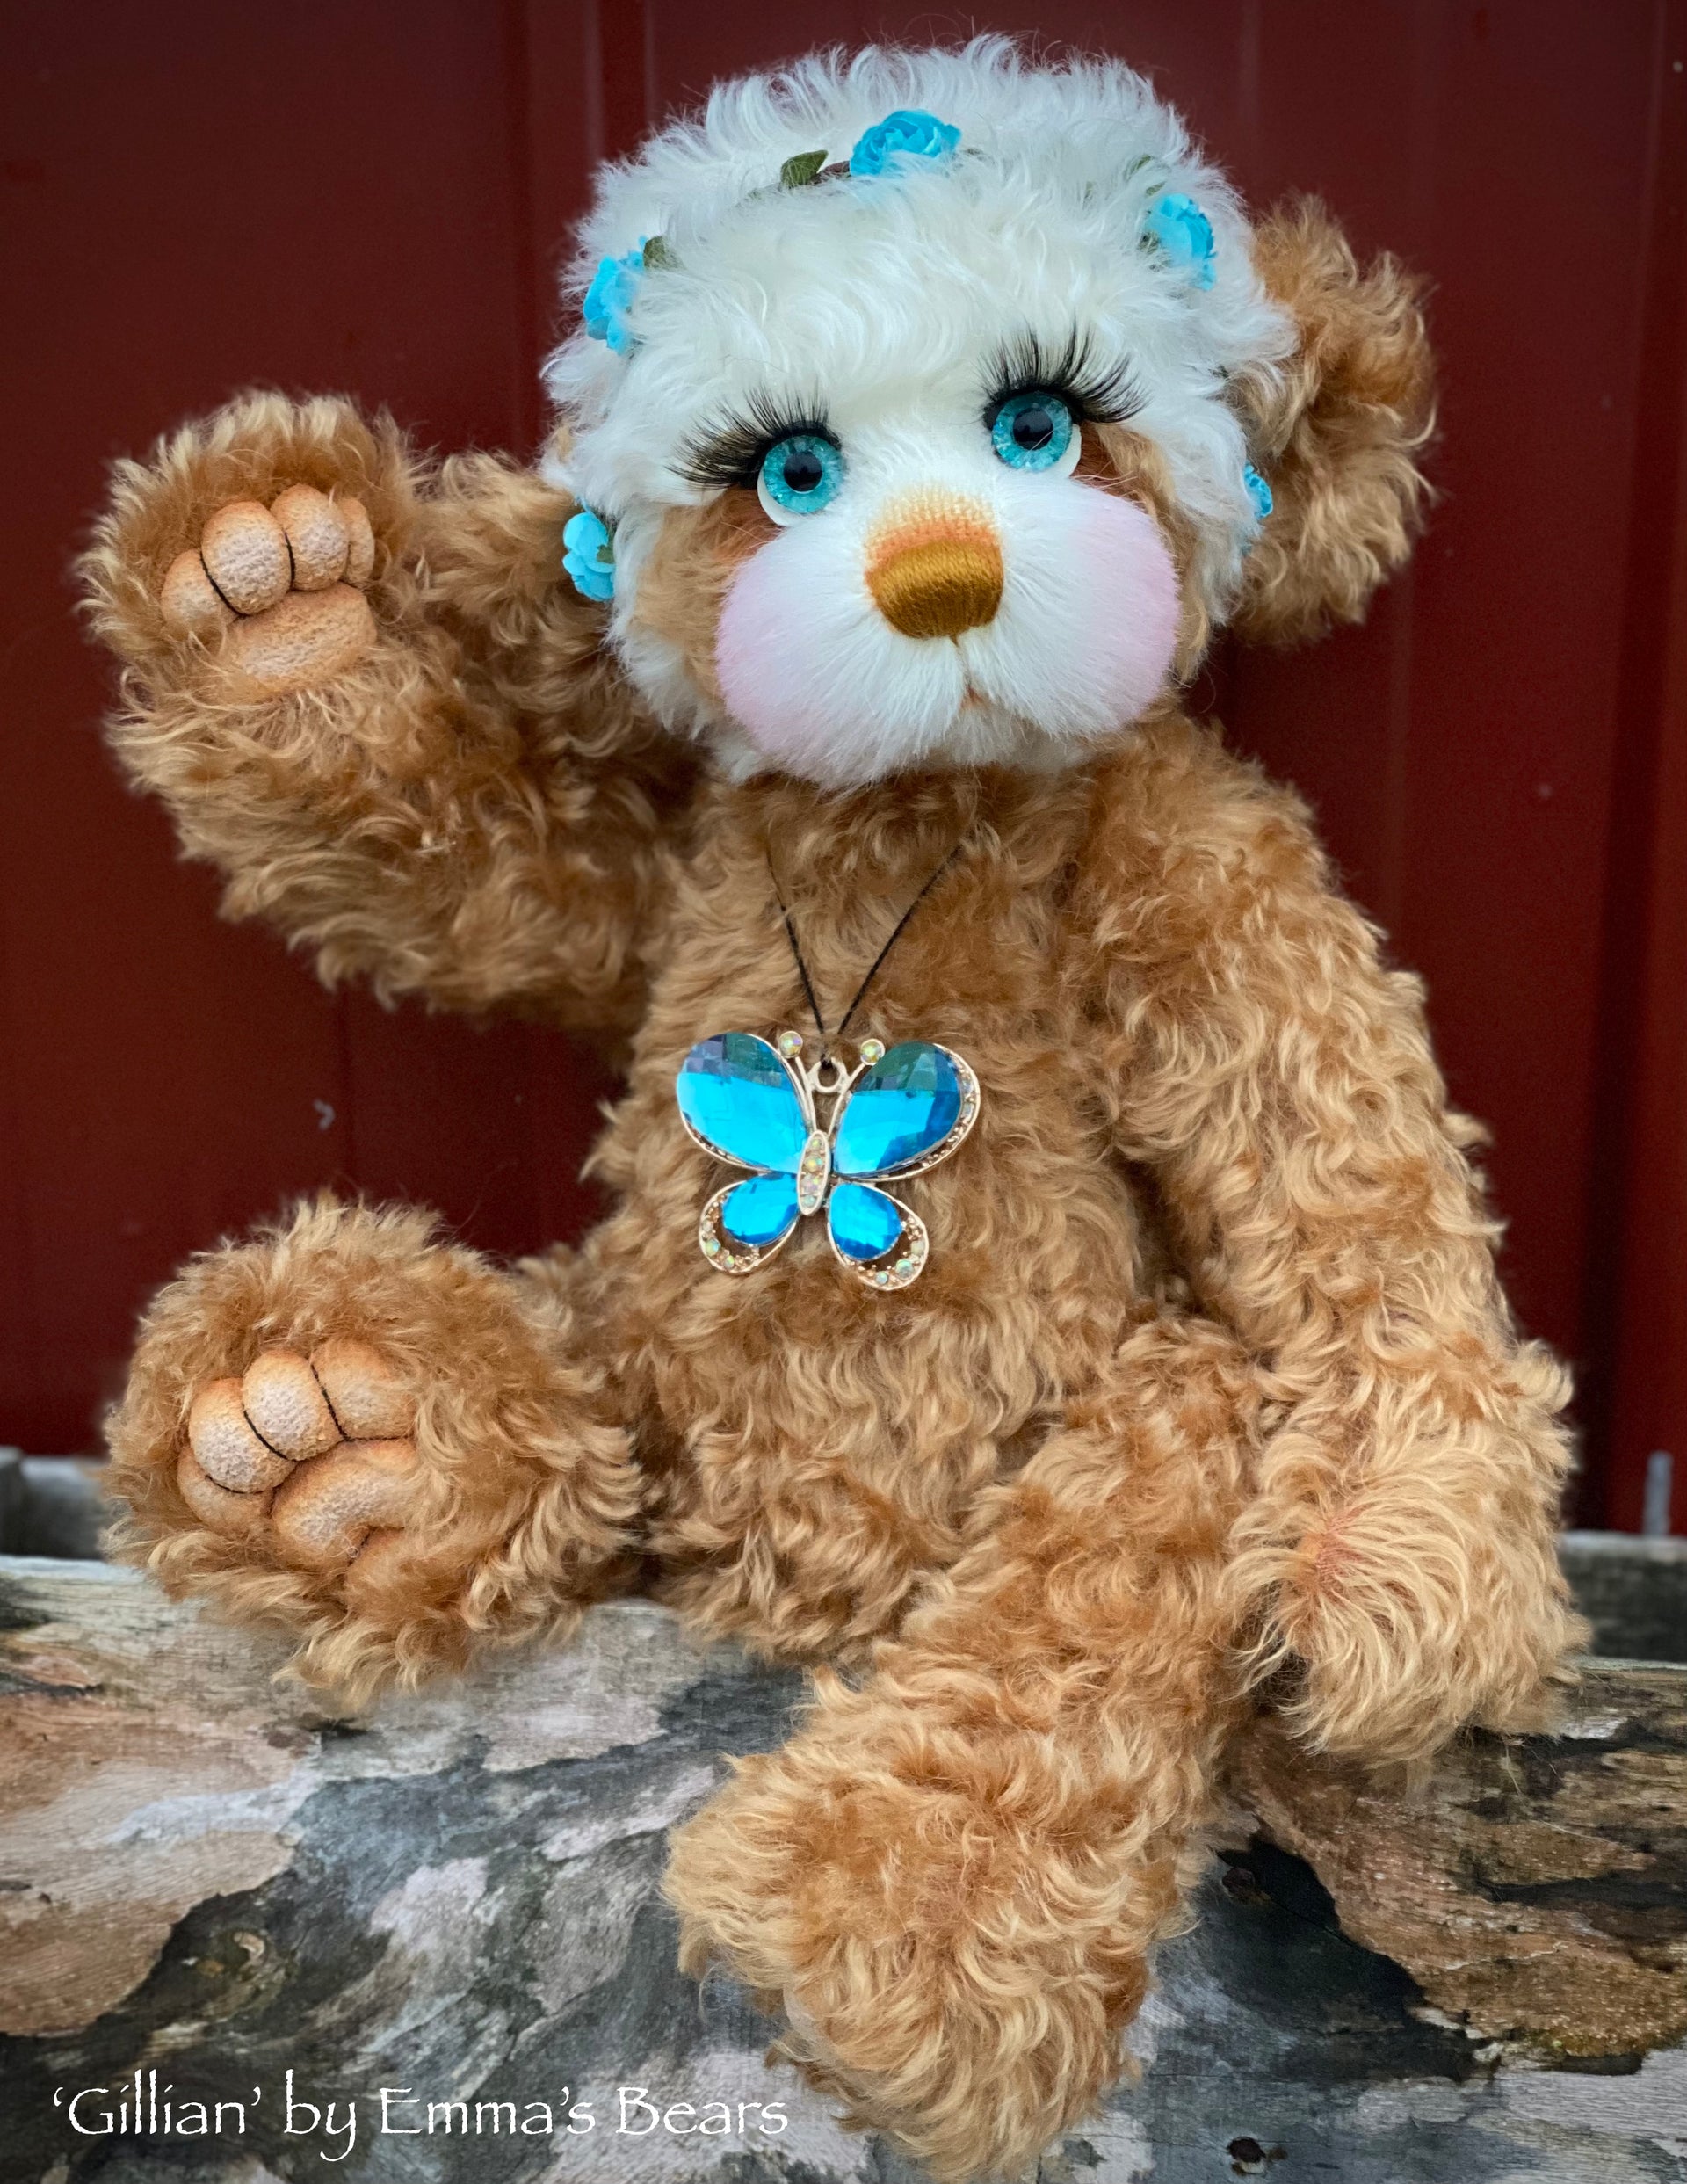 Gillian - 15" Curly Kid Mohair and Alpaca artist bear by Emma's Bears - OOAK